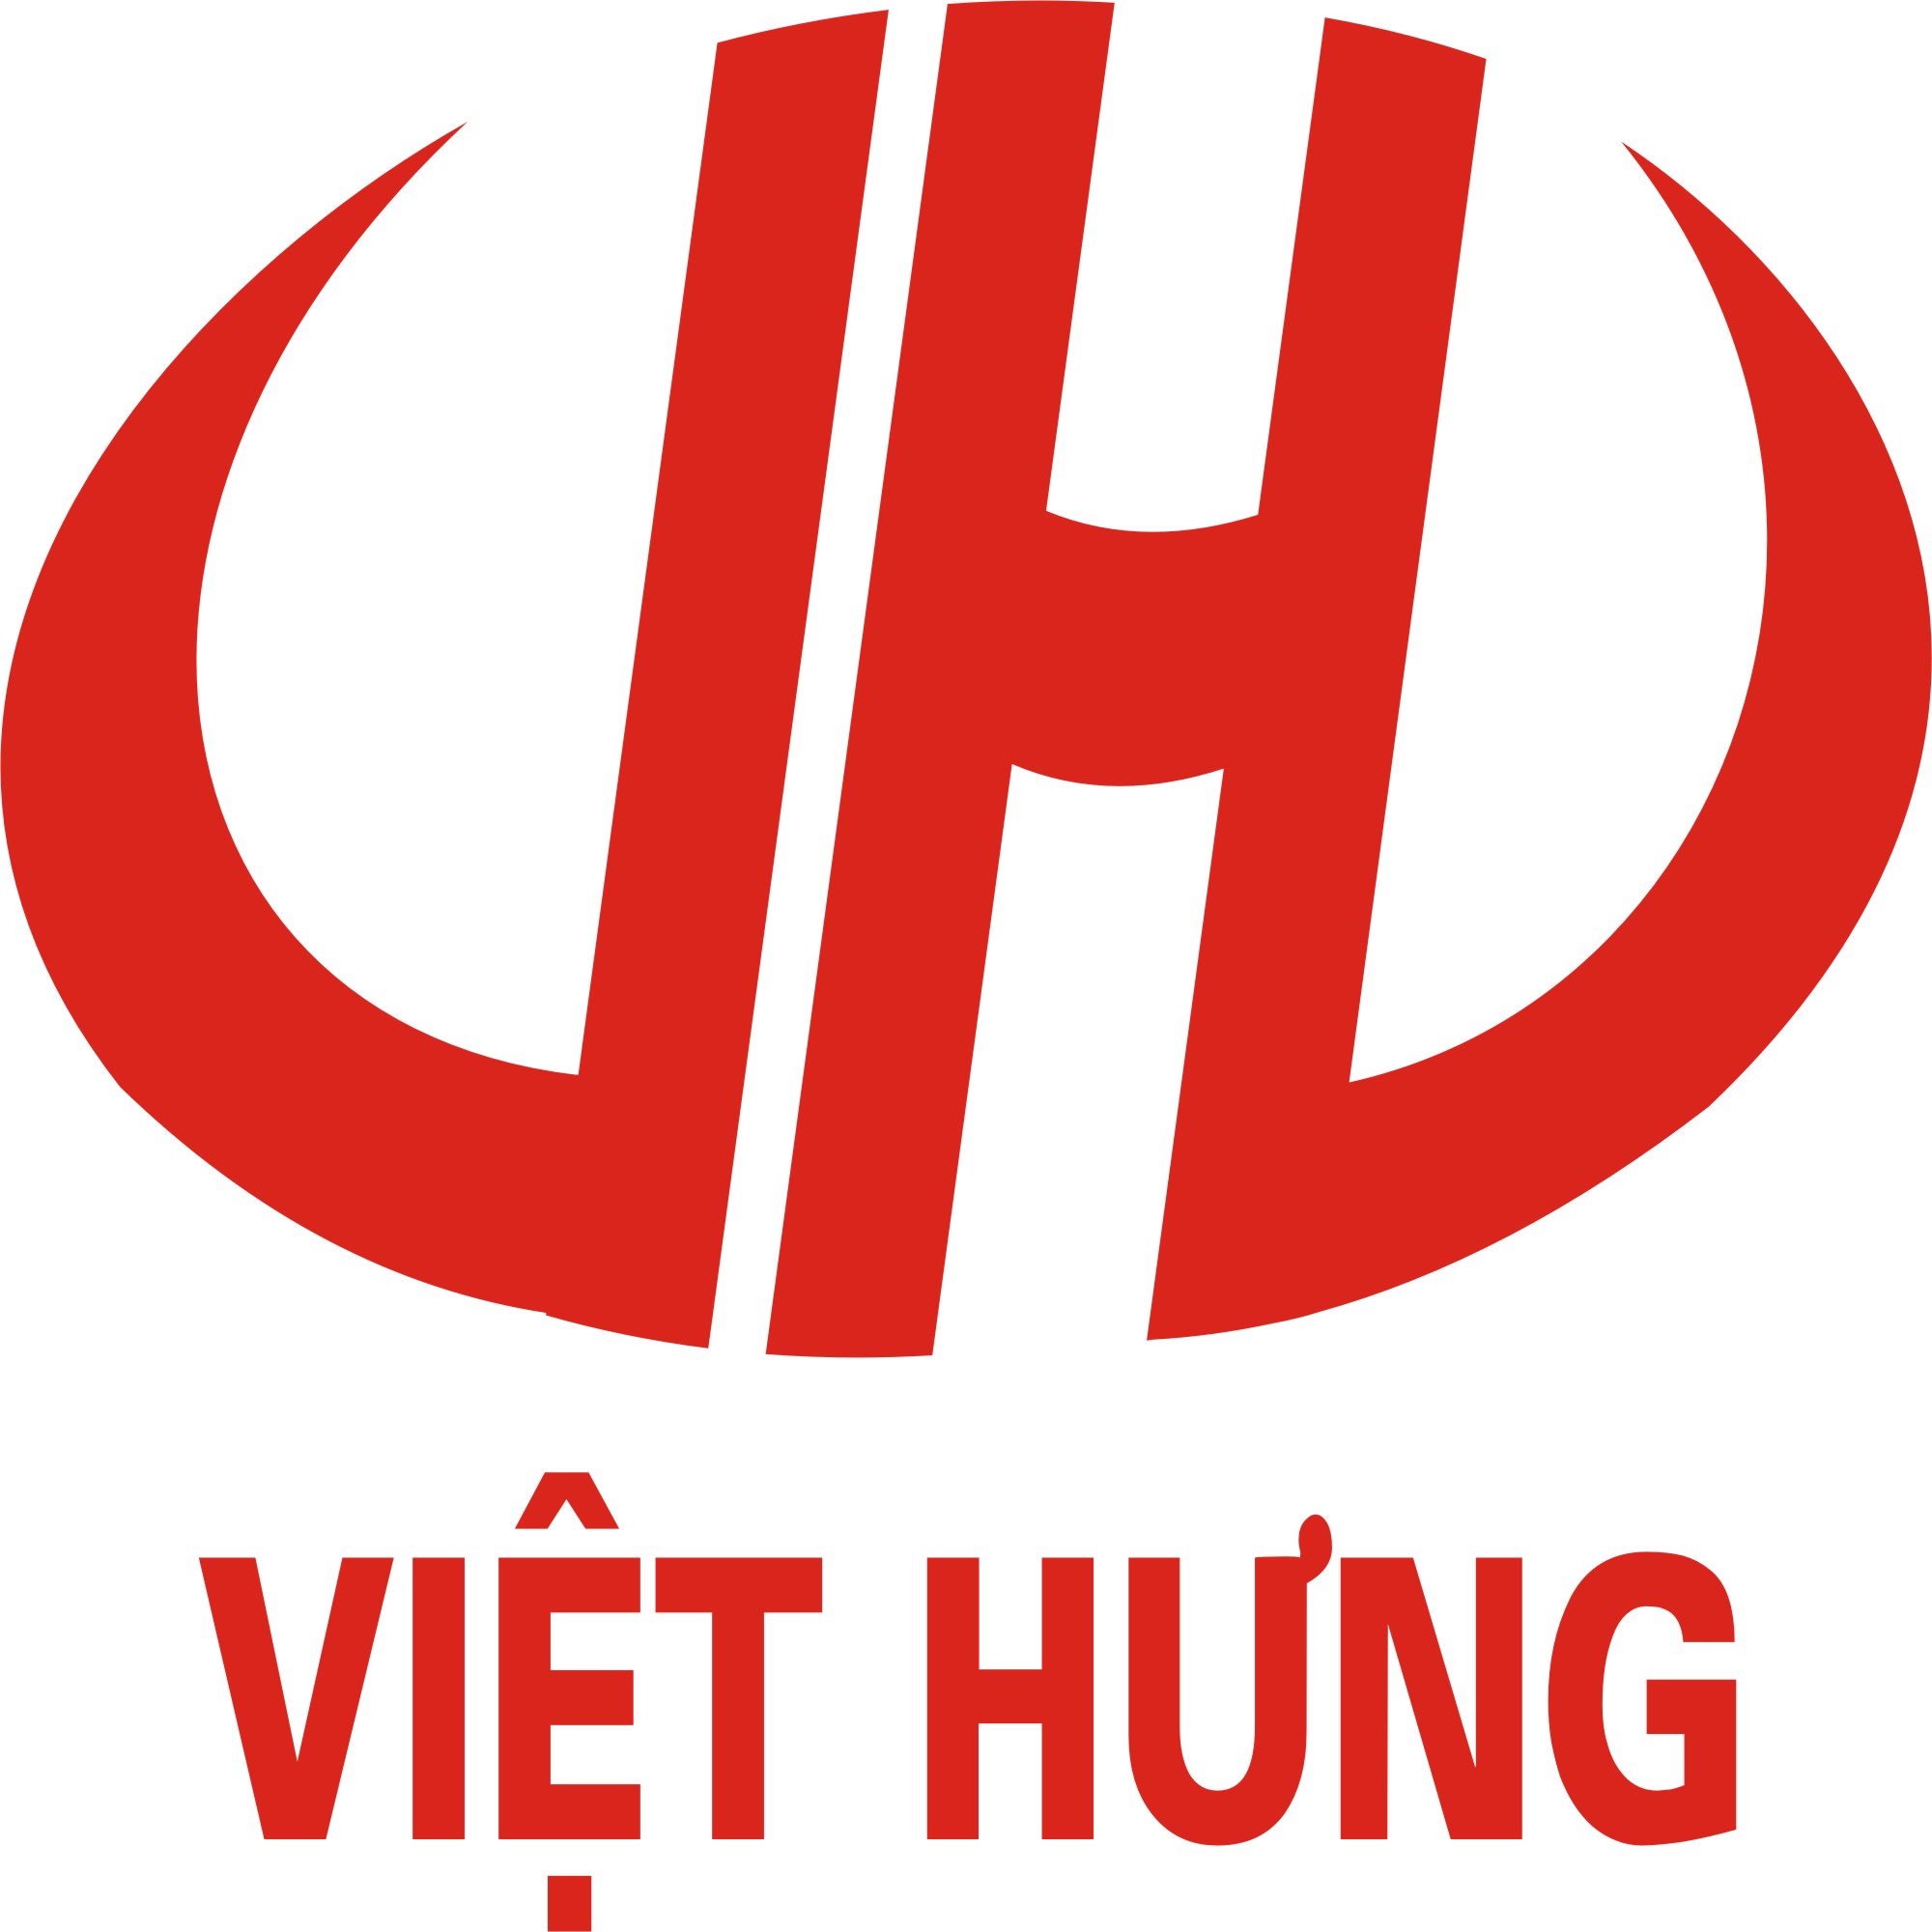 In Việt Hưng